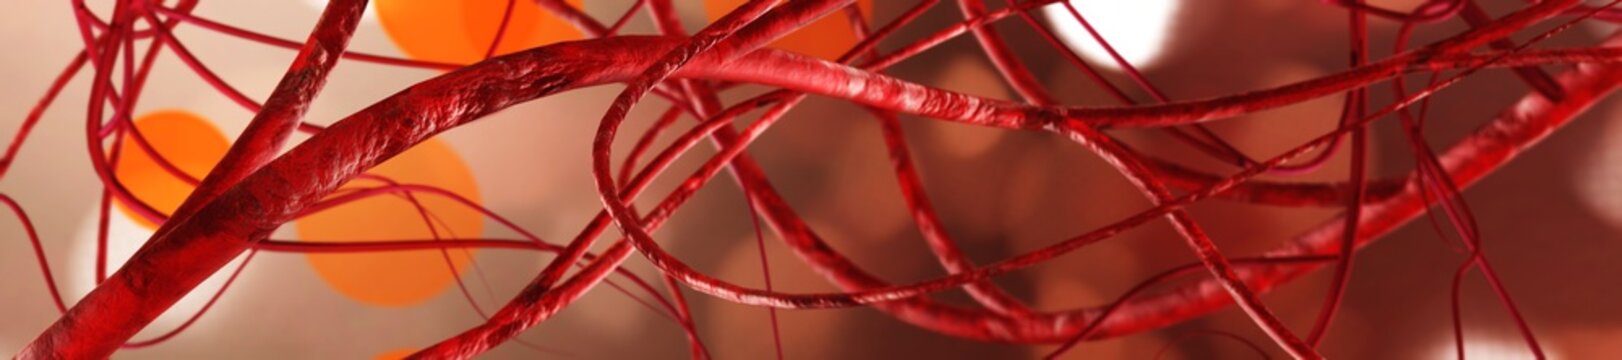 veins, blood vessels
3D rendering
